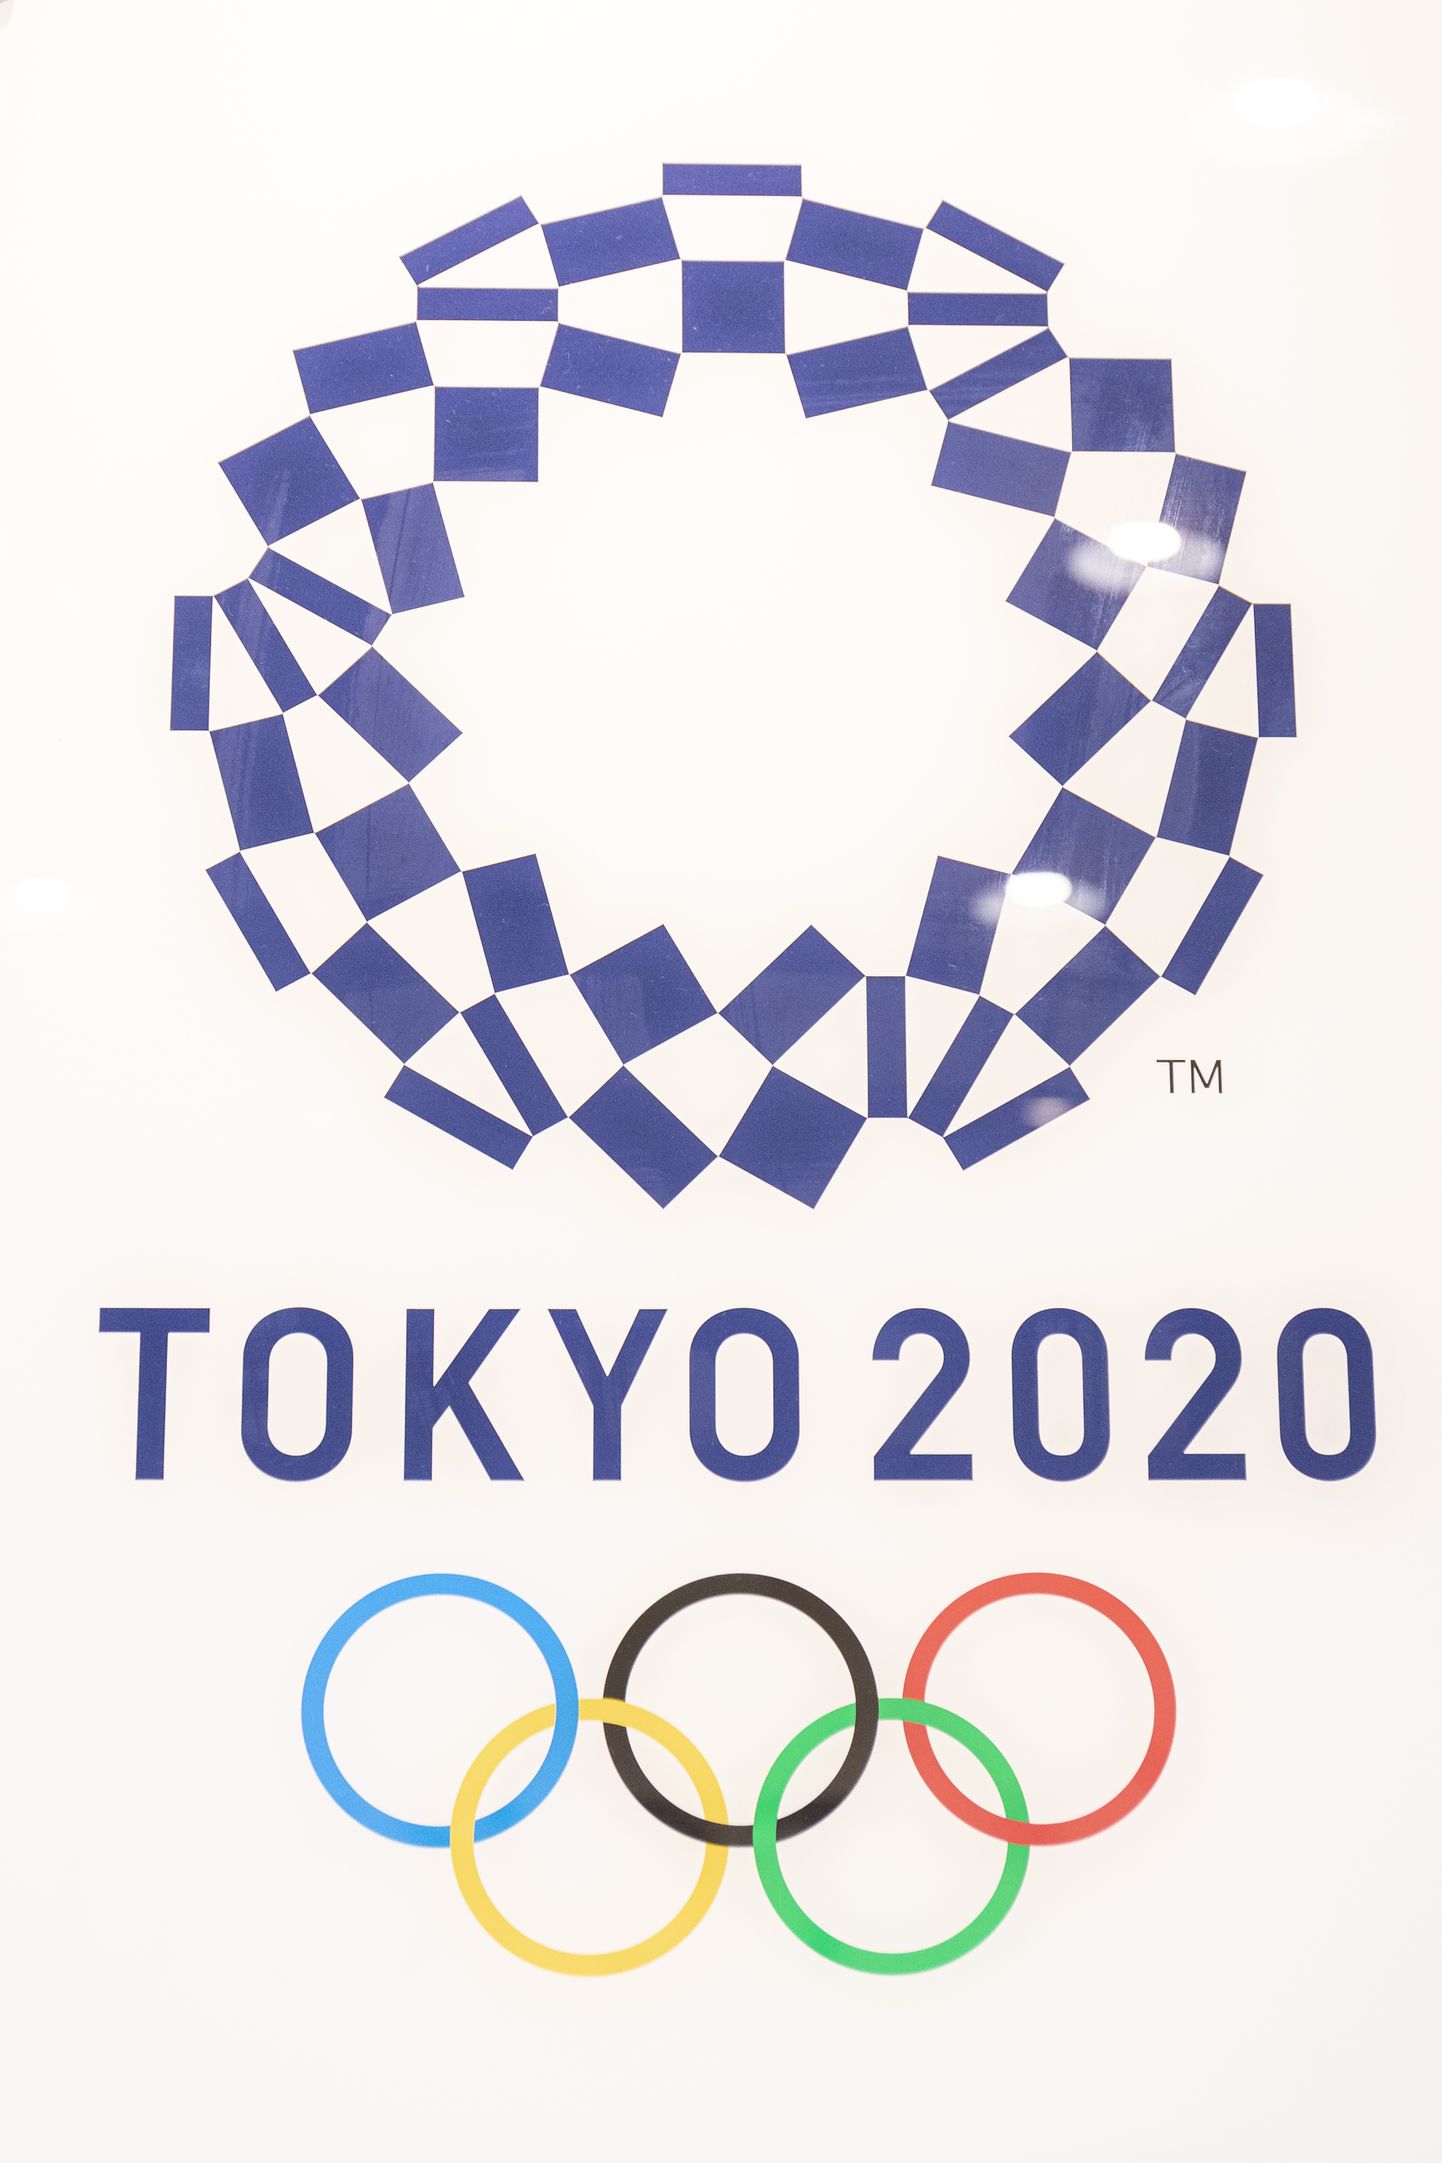 Tokyo 2020 OM logo.